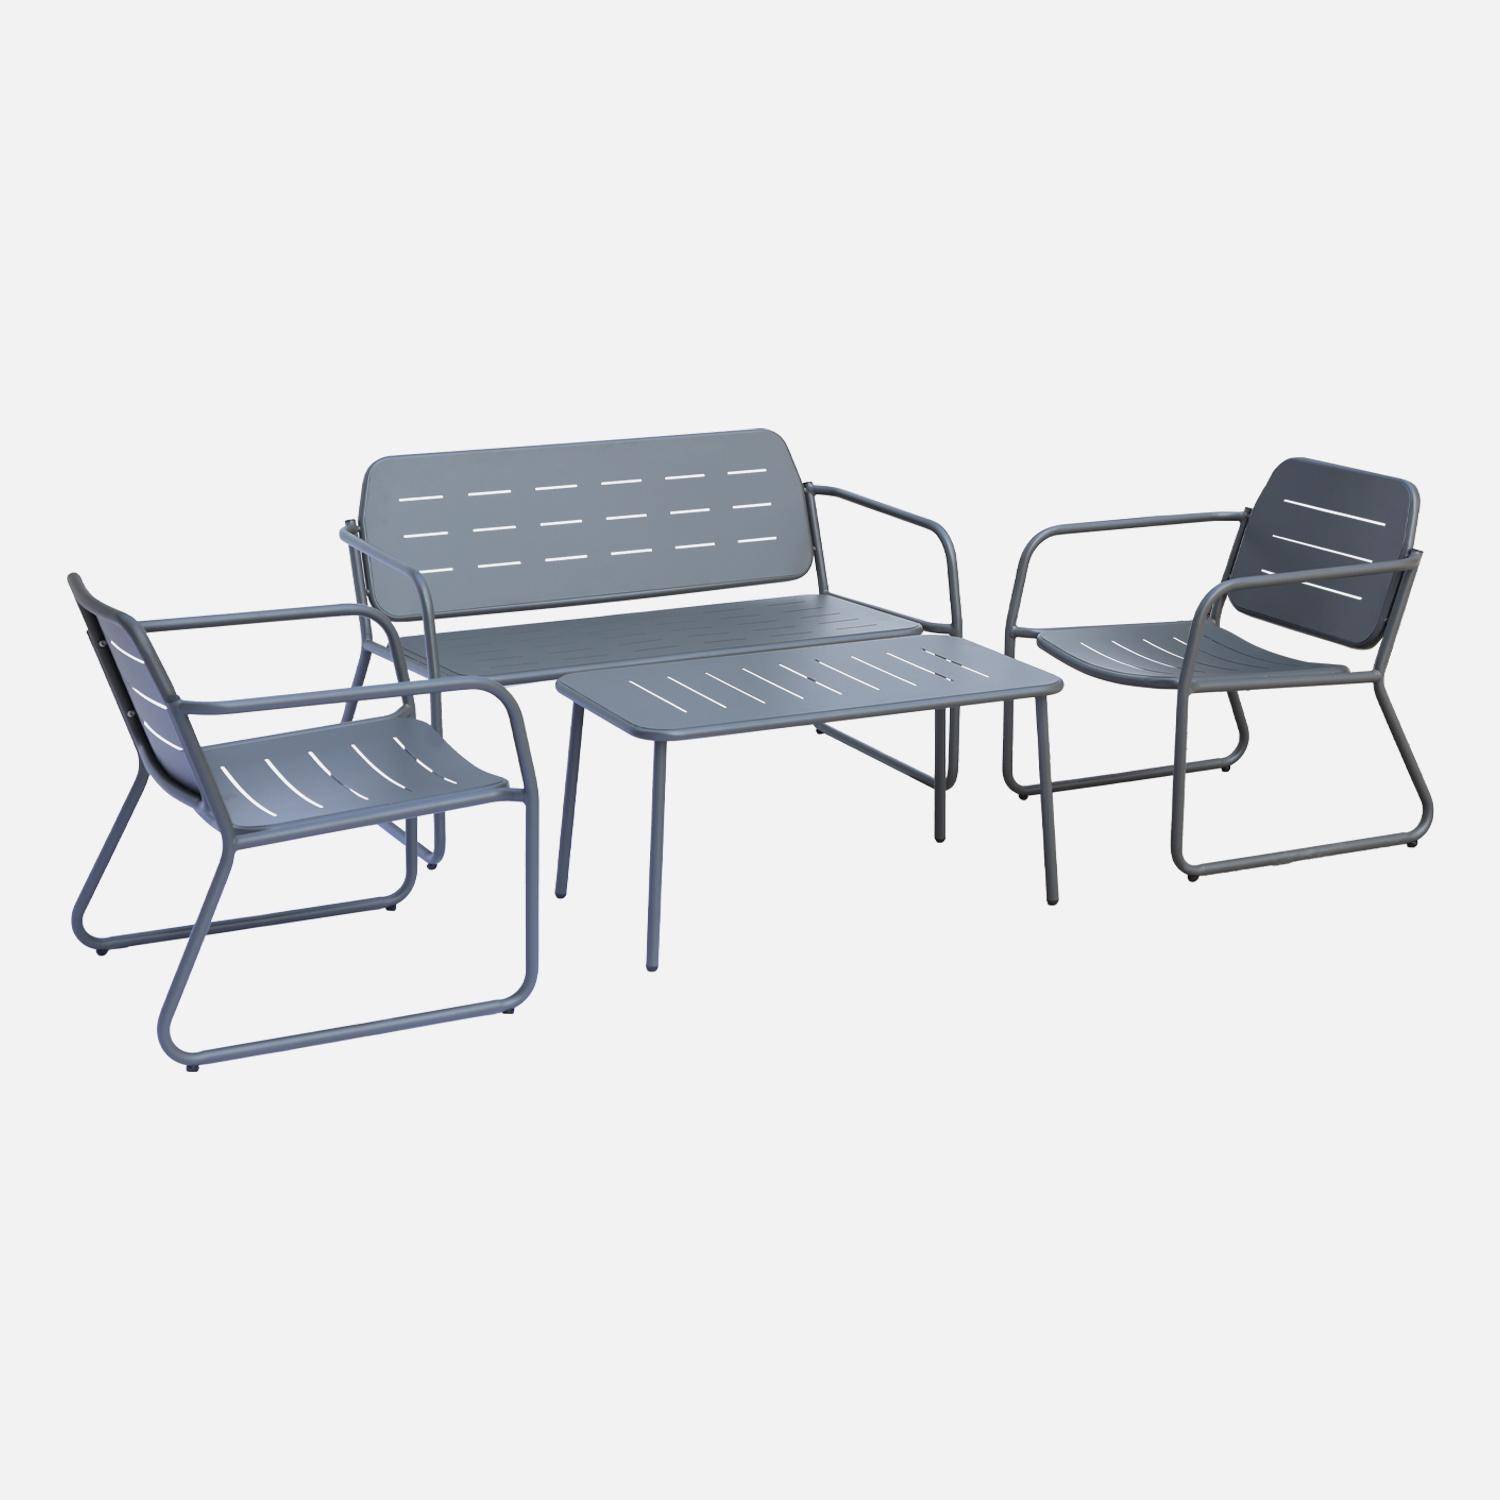 Salon de jardin en métal anthracite, 4 places, 1 canapé, 2 fauteuils, 2 table basse Photo1